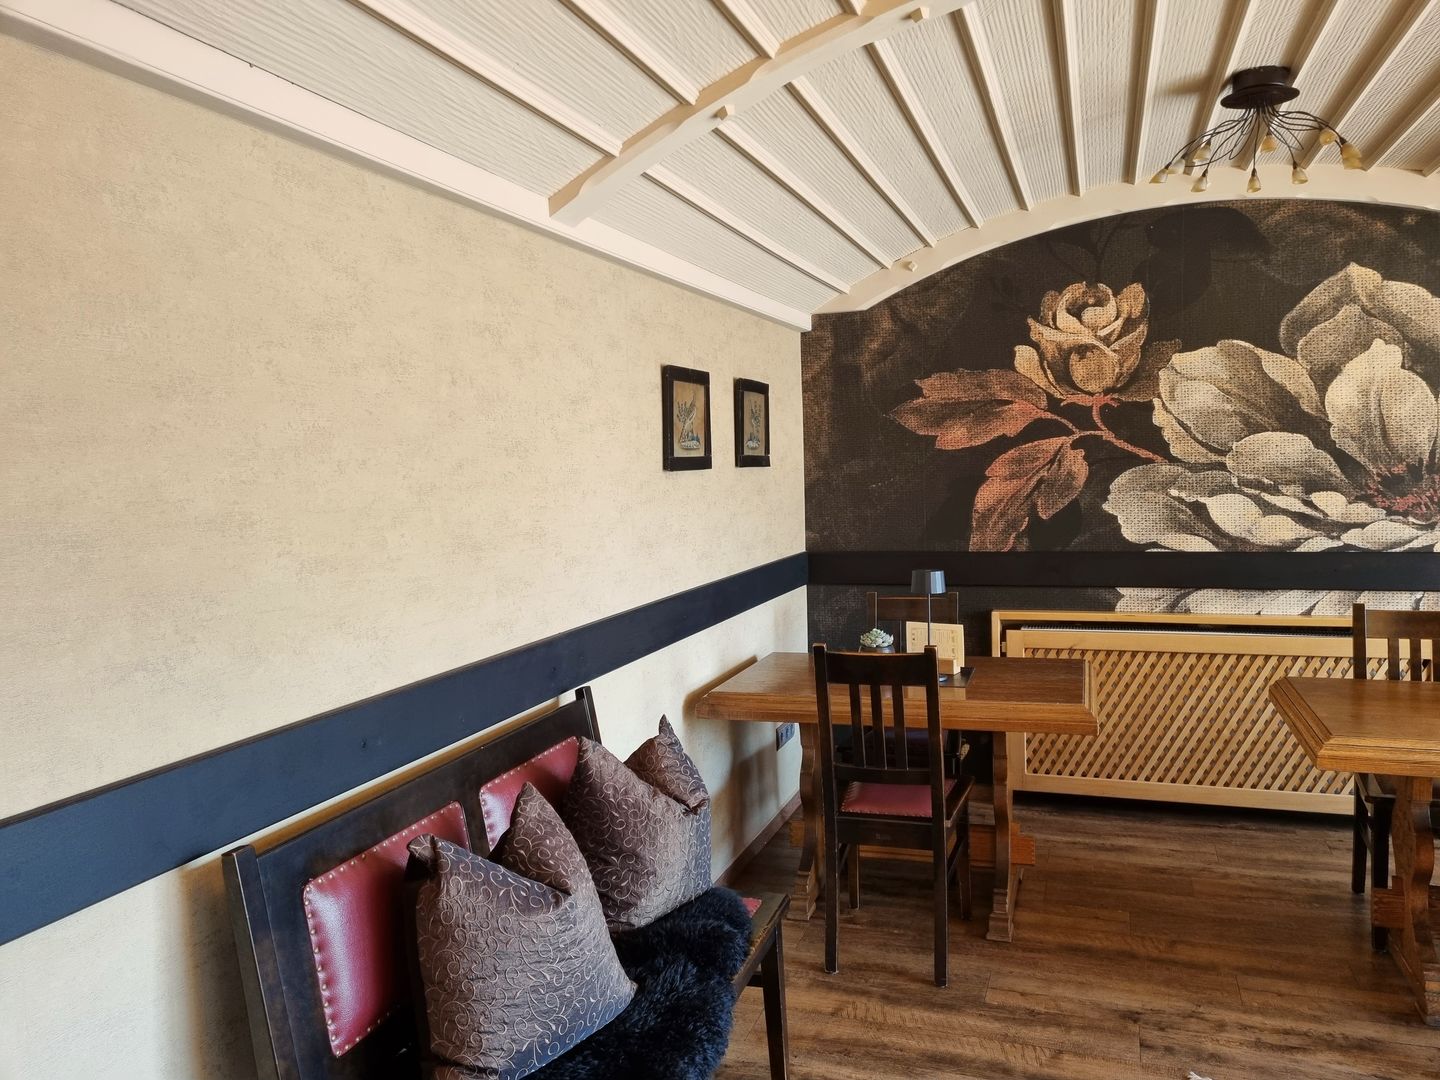 Tolle Fototapete neben einer Wand mit Designtapete aufgebracht. Das Cafe Beck ist auch im angrenzenden Landkreis Roth bekannt und hat neu renoviert. Wir durften die Malerarbeiten dabei ausführen.